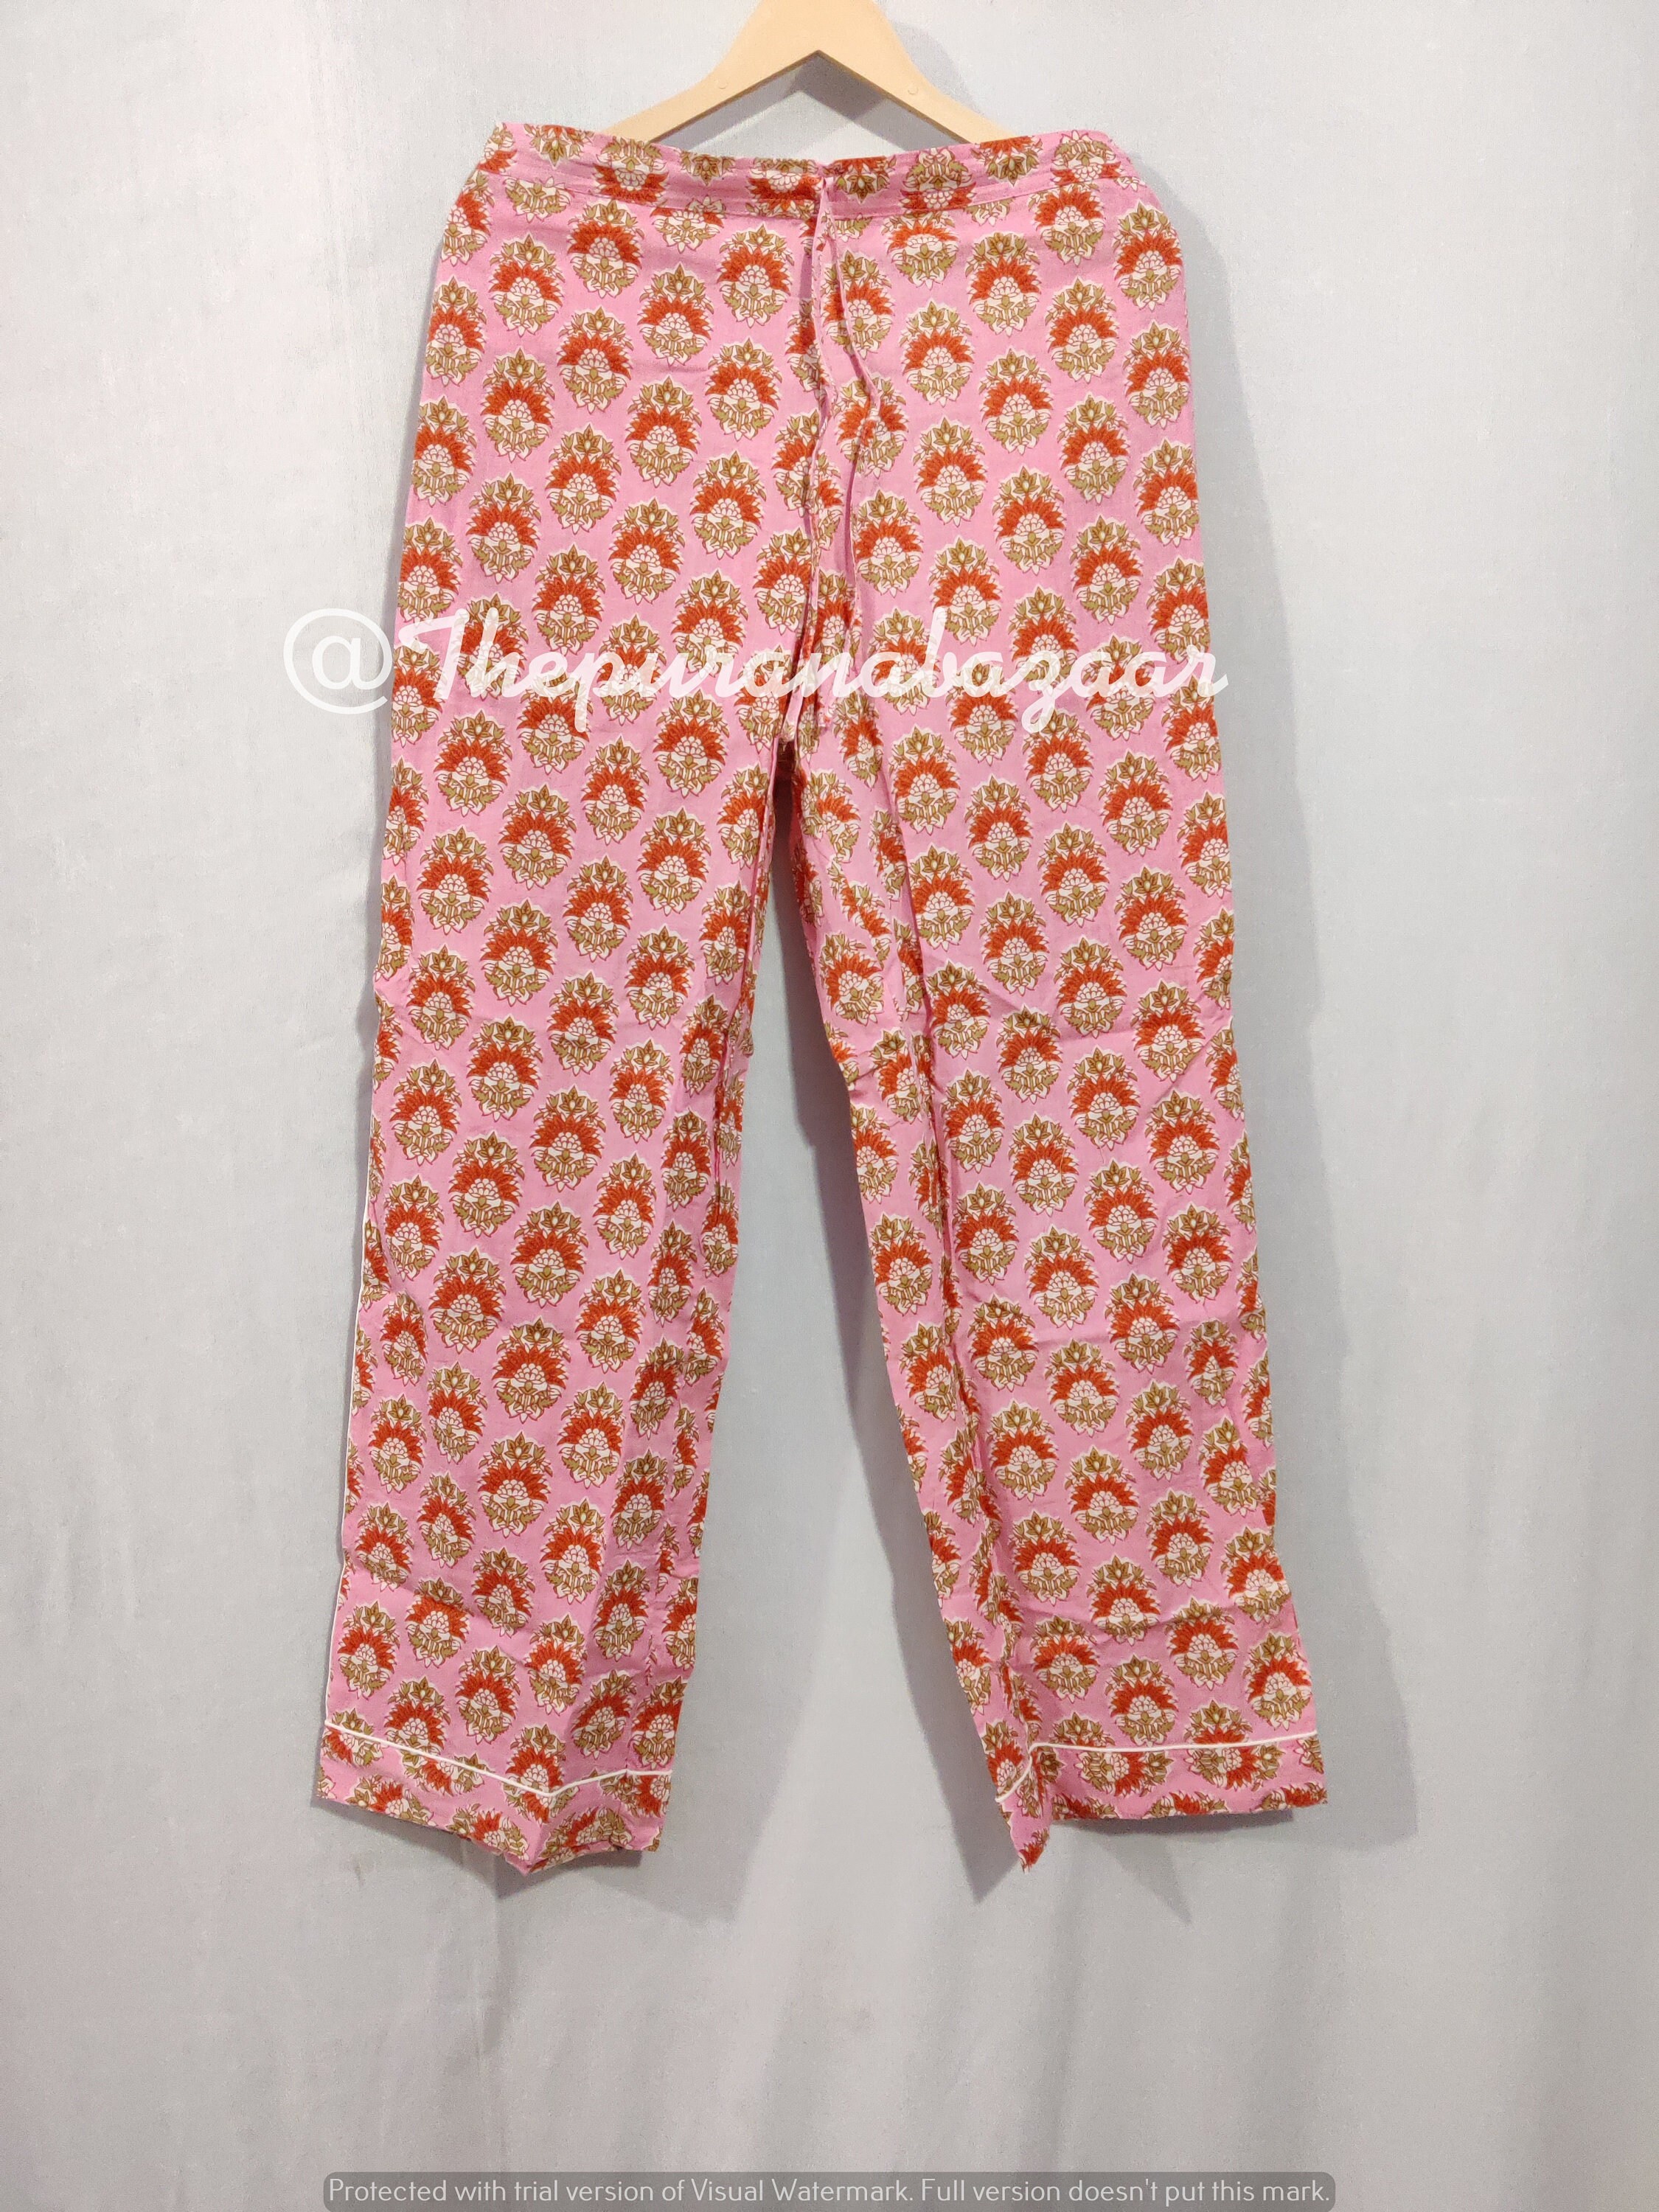 Floral Print Cotton Pajama Pants, Women Lounge Pants, Beach Pants